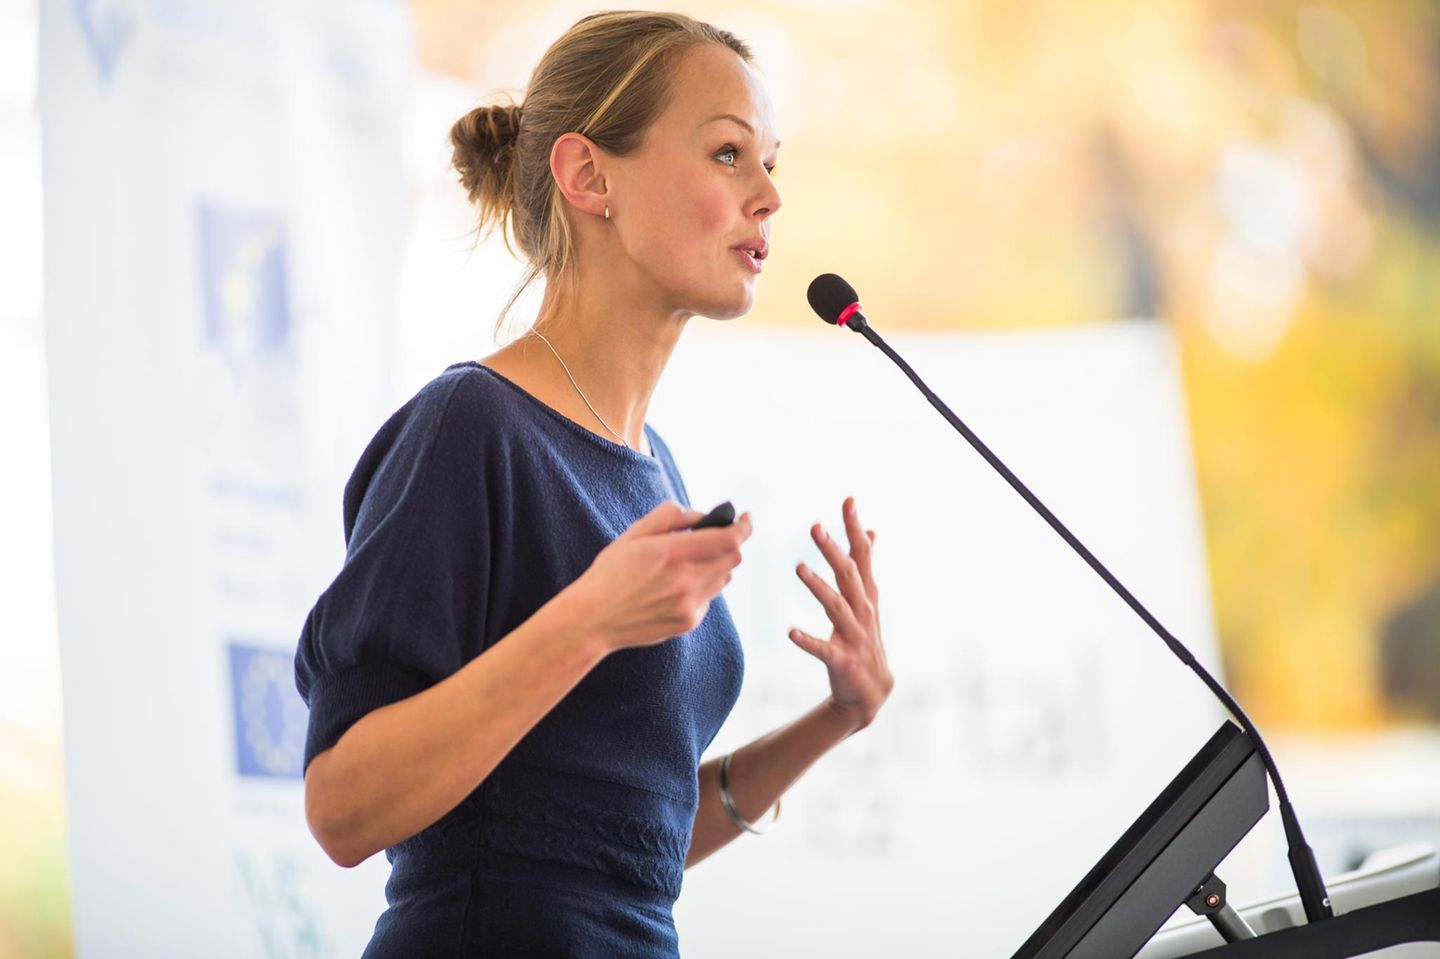 Karriere-Tipps für Frauen: Eine blonde Frau hält eine Rede am Rednerpult mit Mikro